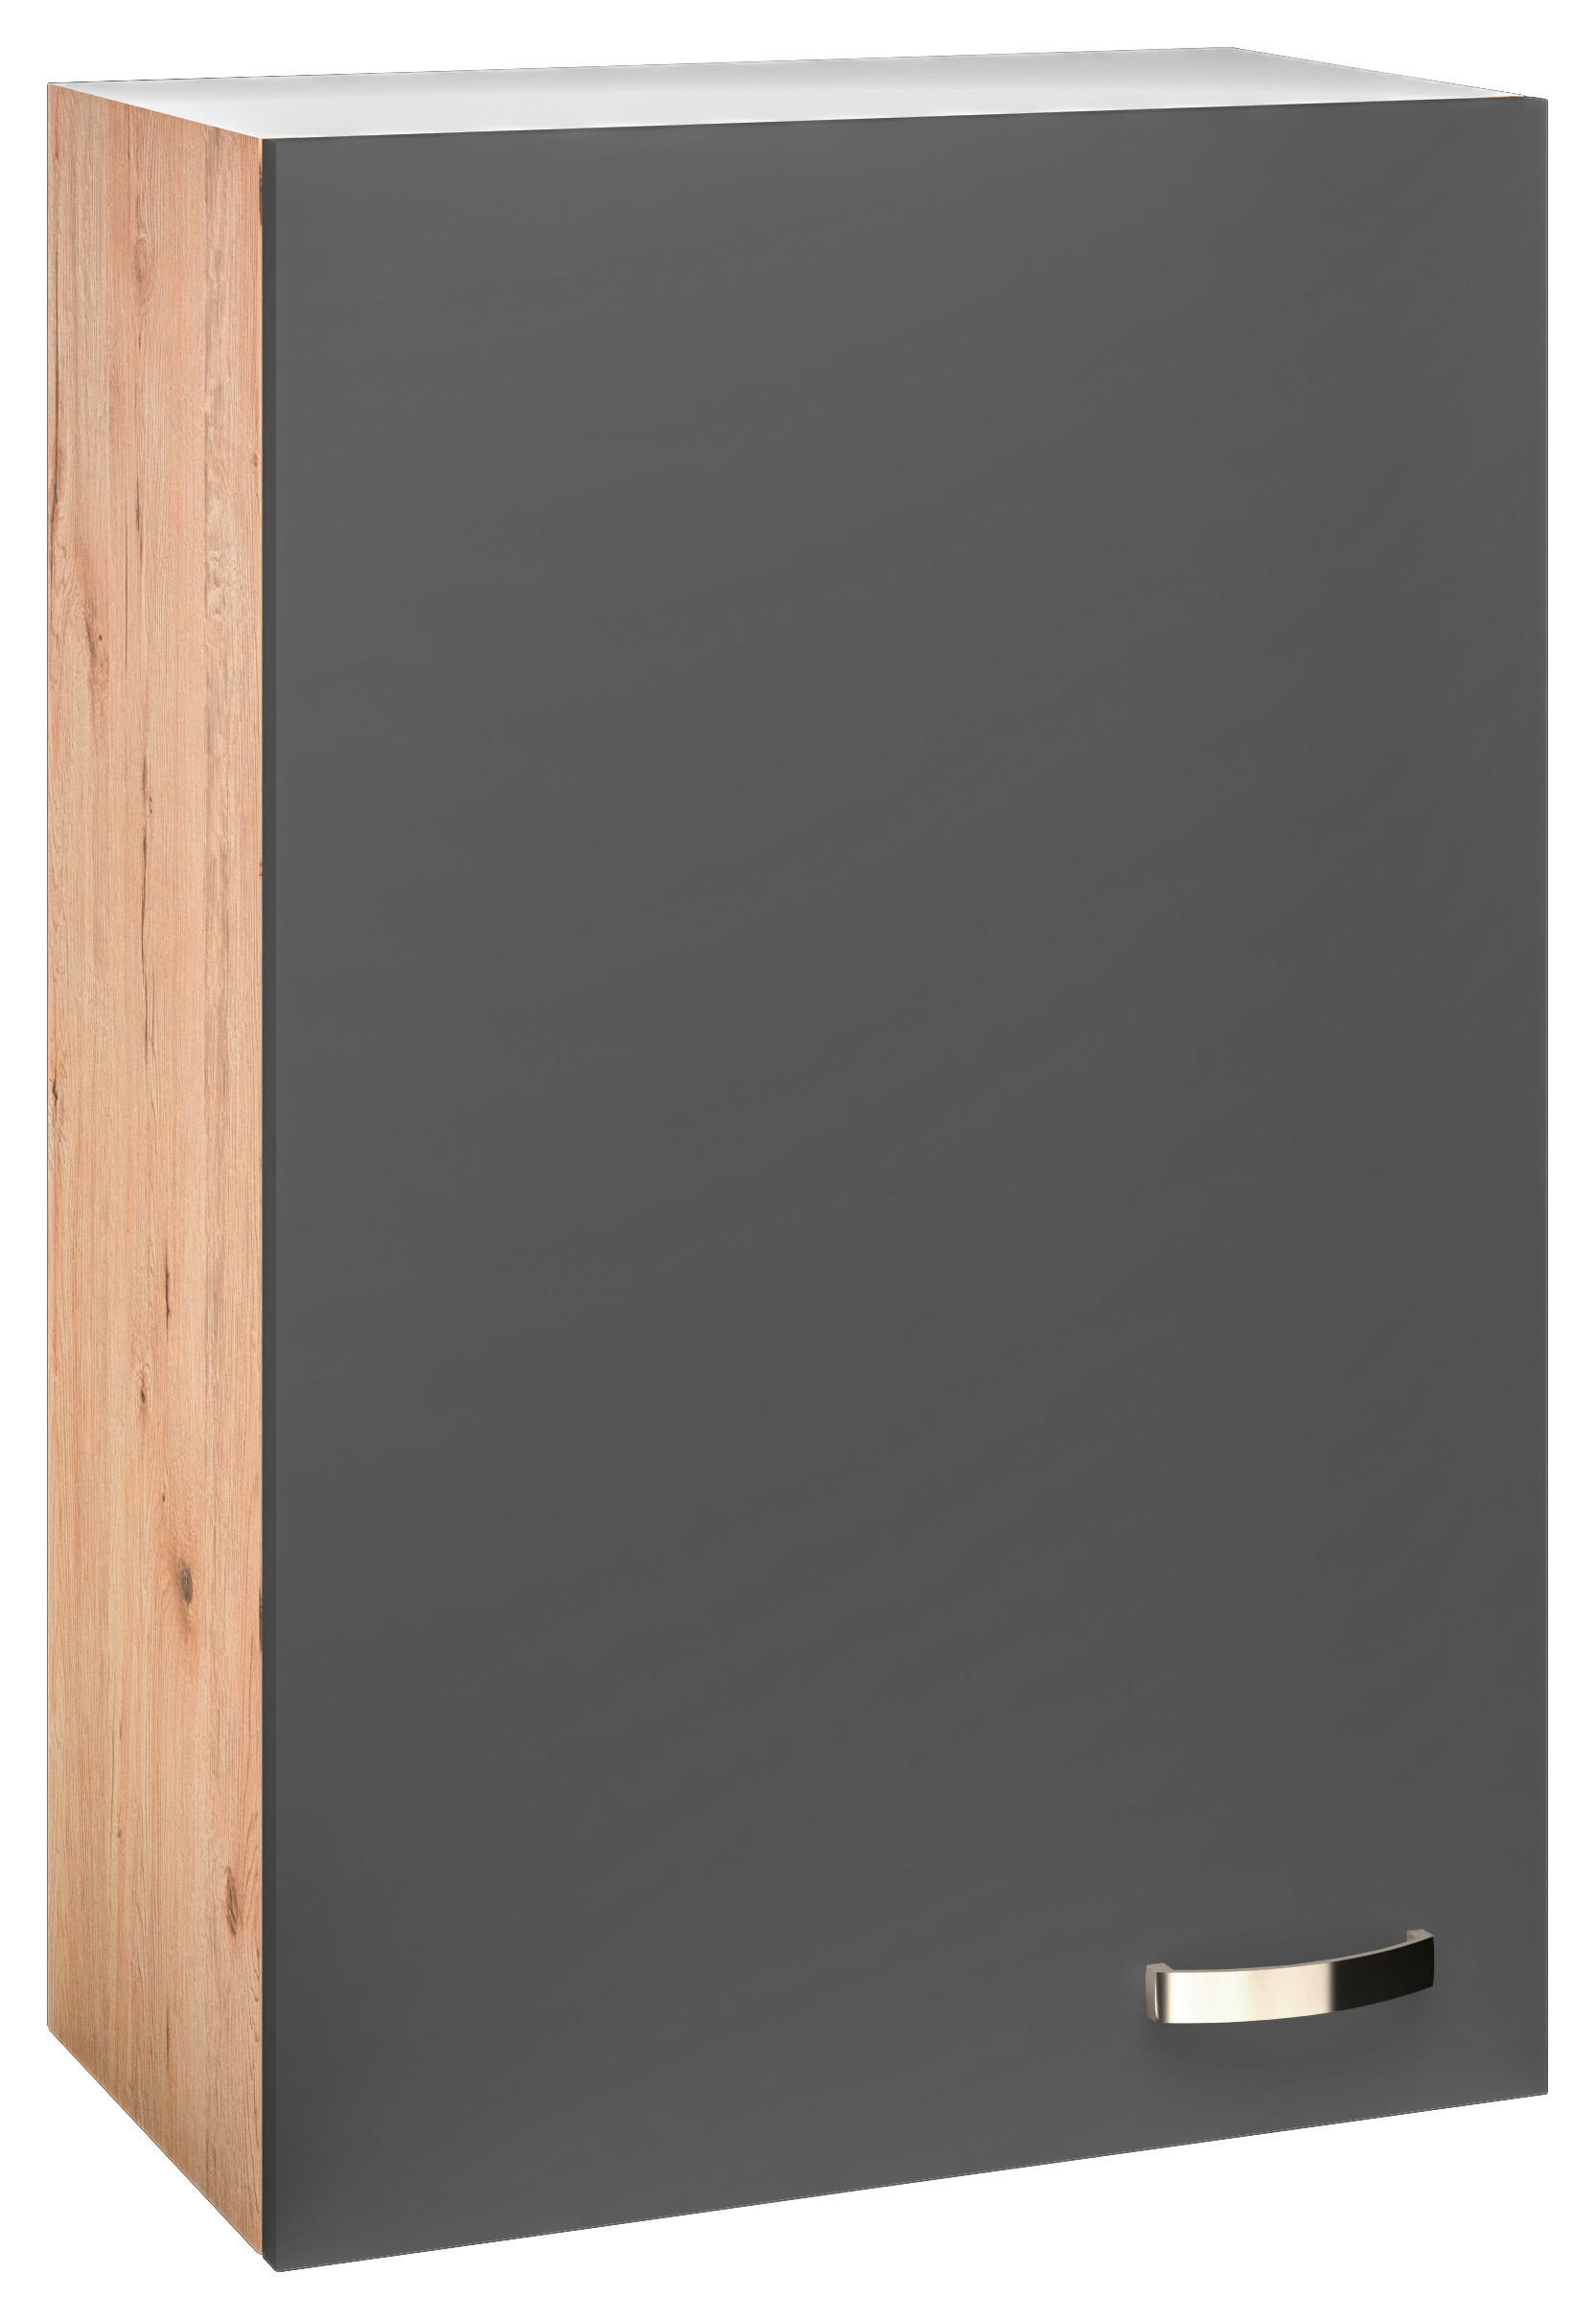 FlexWell GESCHIRRSCHRANK 50/200/57 cm in Eiche San Remo, Dunkelgrau jetzt  nur online ➤